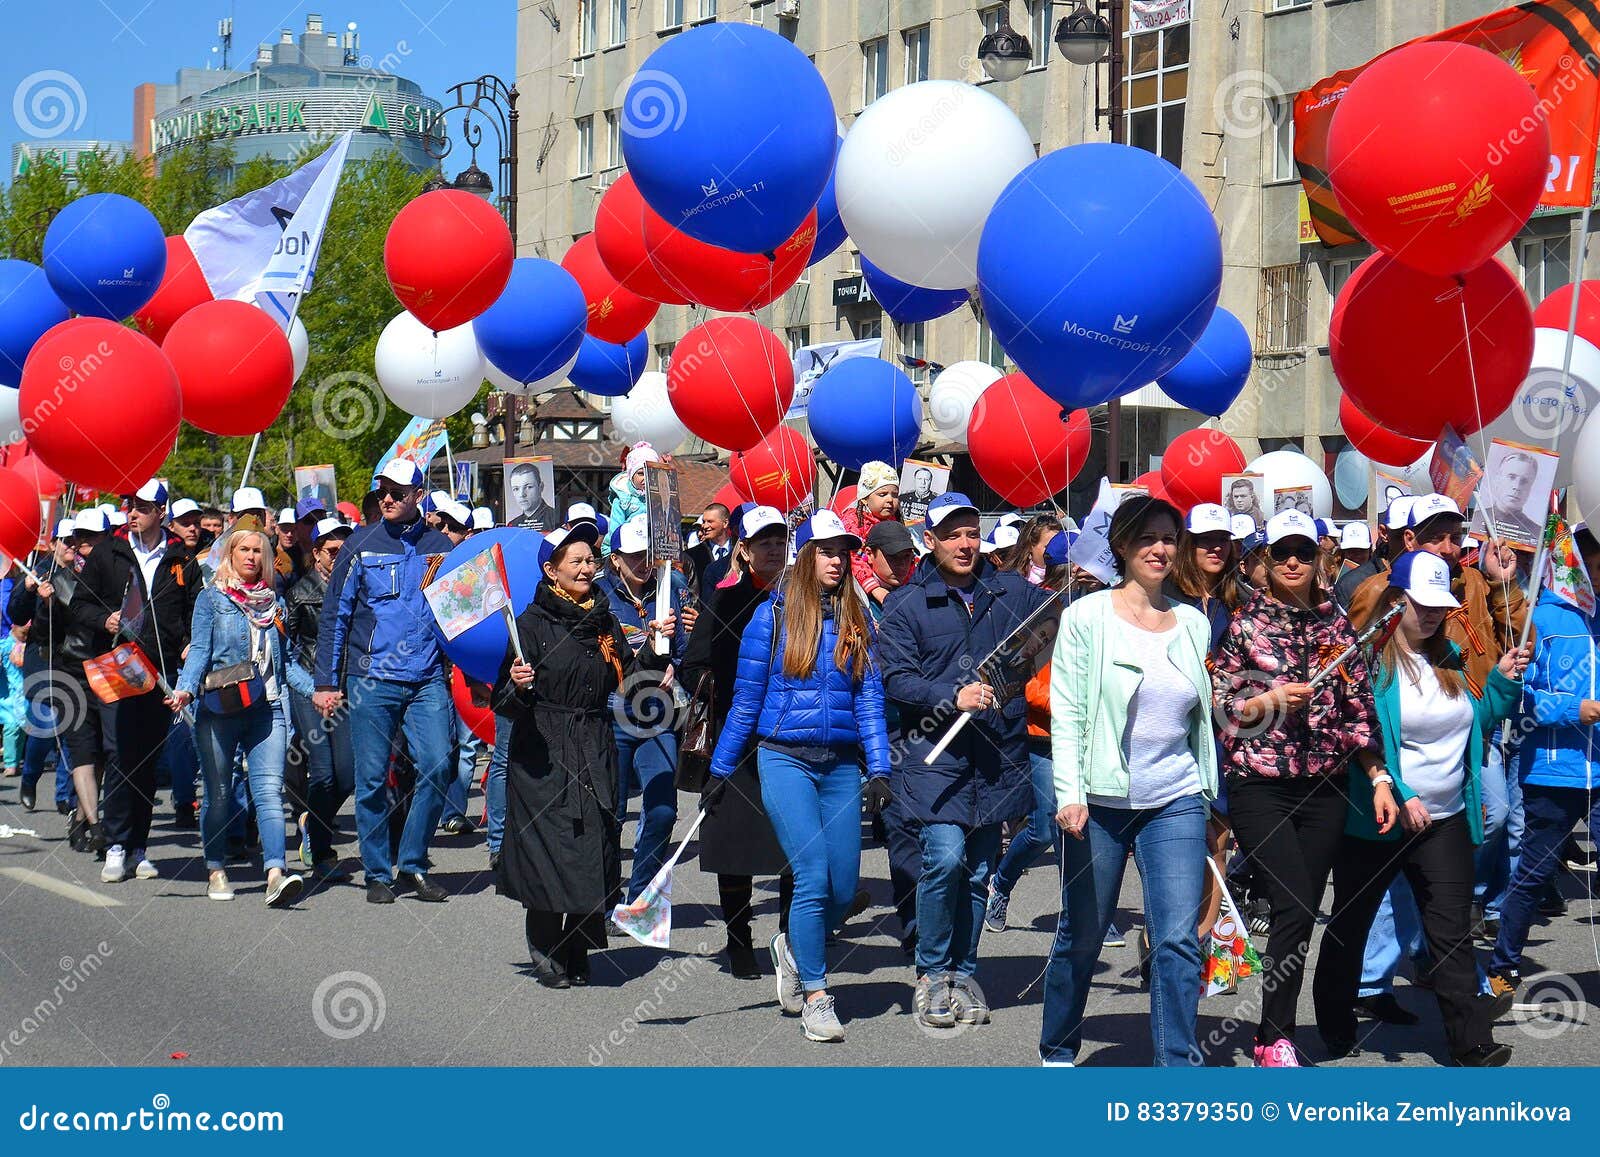 Можно выходить в мае. Шествие с шарами. Праздничное шествие с воздушными шарами. С воздушными шарами на демонстрации. Демонстрация с воздушными шариками.